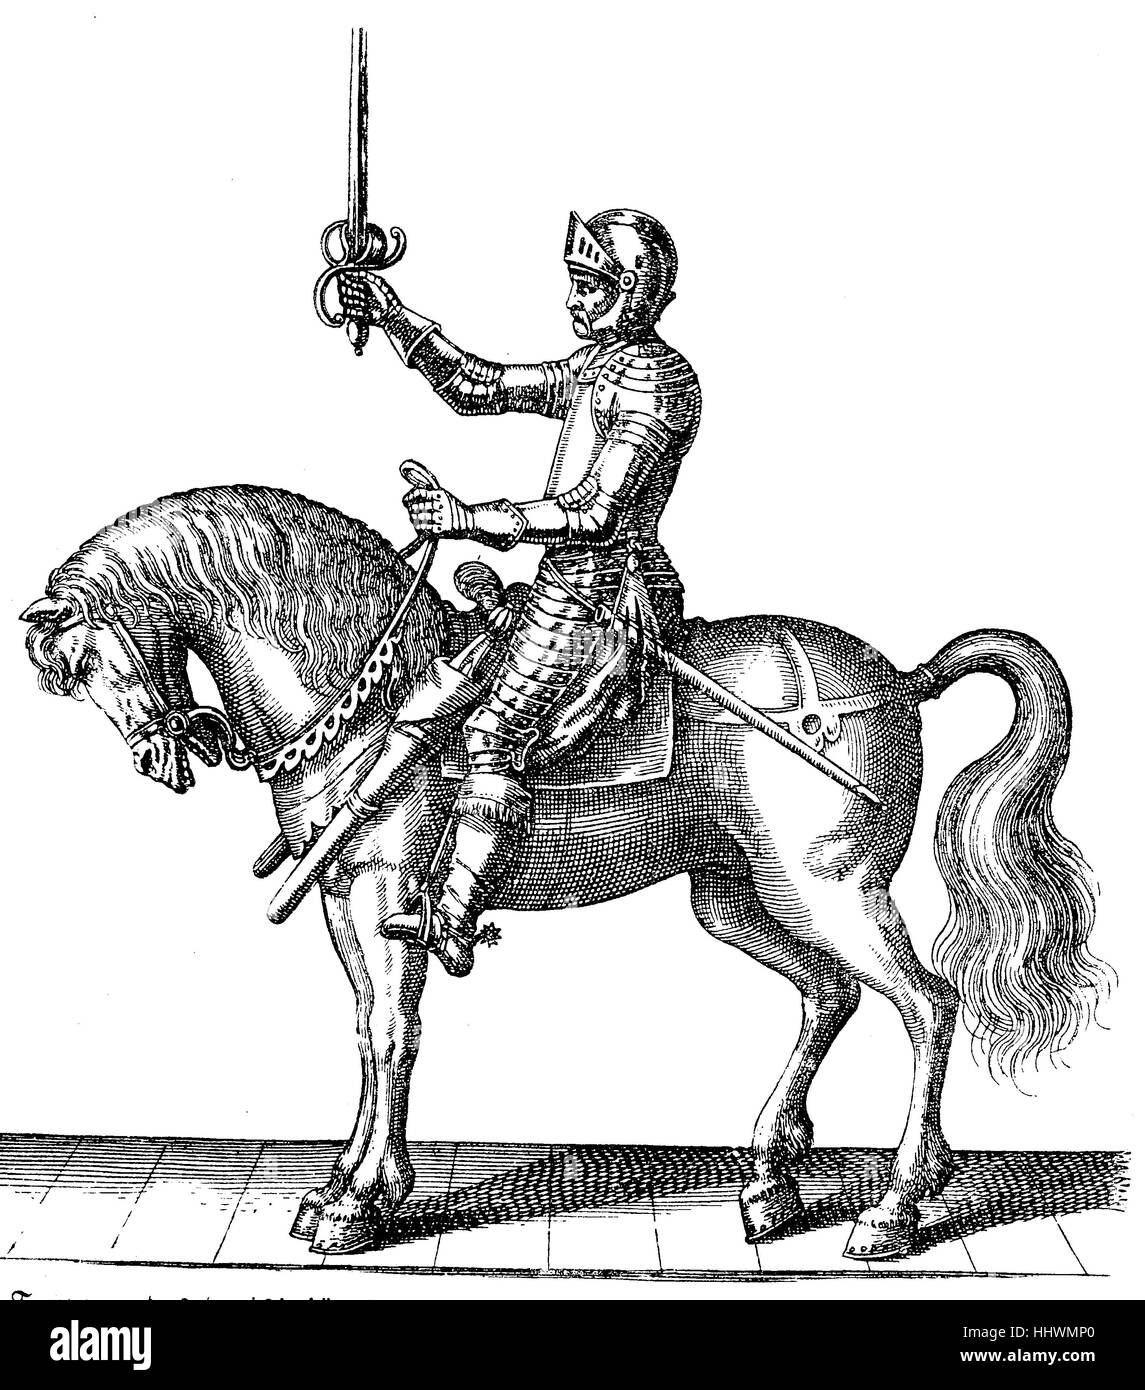 Kürassiere des Dreißigjährigen Krieges, Reiter mit Rüstung und Pferd, Geschichtsbild oder Illustration, veröffentlicht 1890, digital verbessert Stockfoto